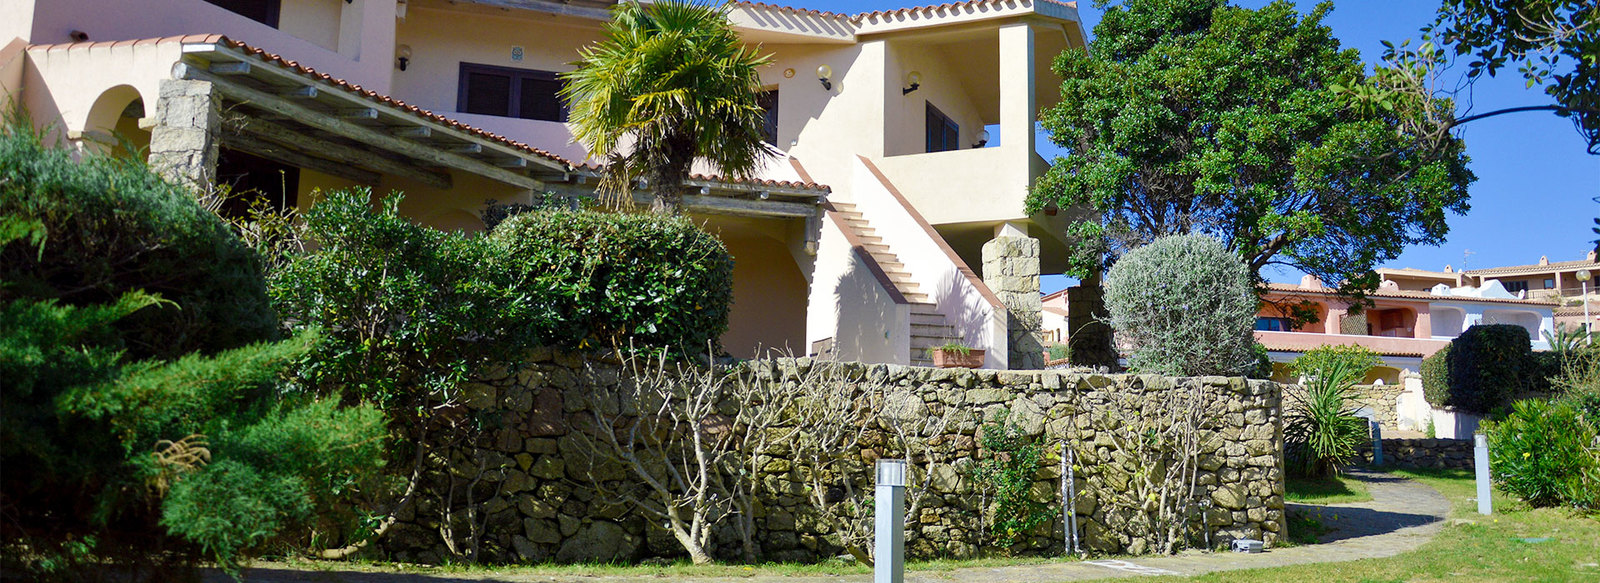 Appartamenti in Costa Smeralda, i più richiesti